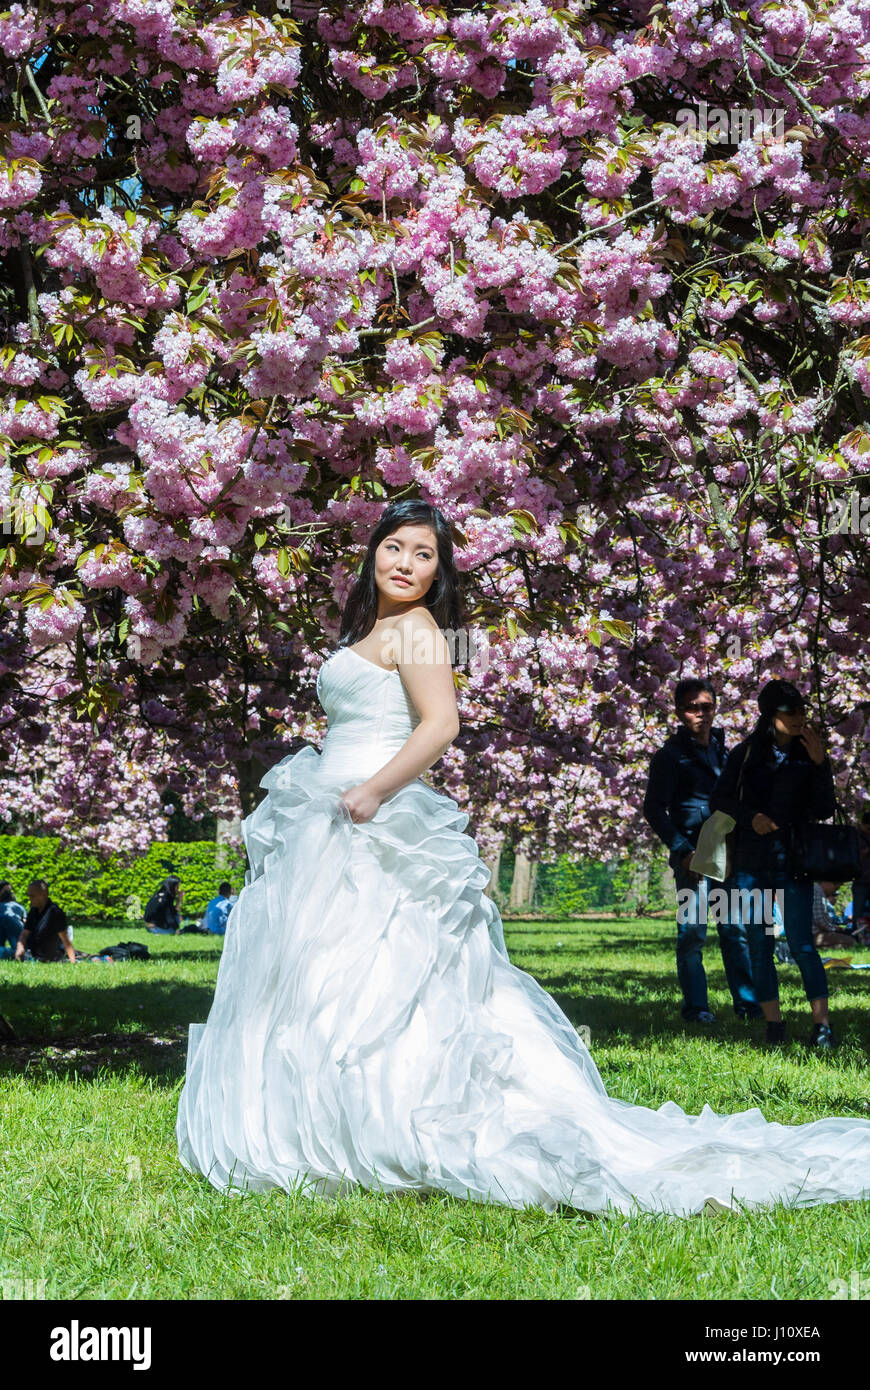 Antony, France, Parc de Sceaux, gens appréciant les cerisiers en fleurs,  fleurs printanières, femme chinoise posant en robe de mariage Photo Stock -  Alamy